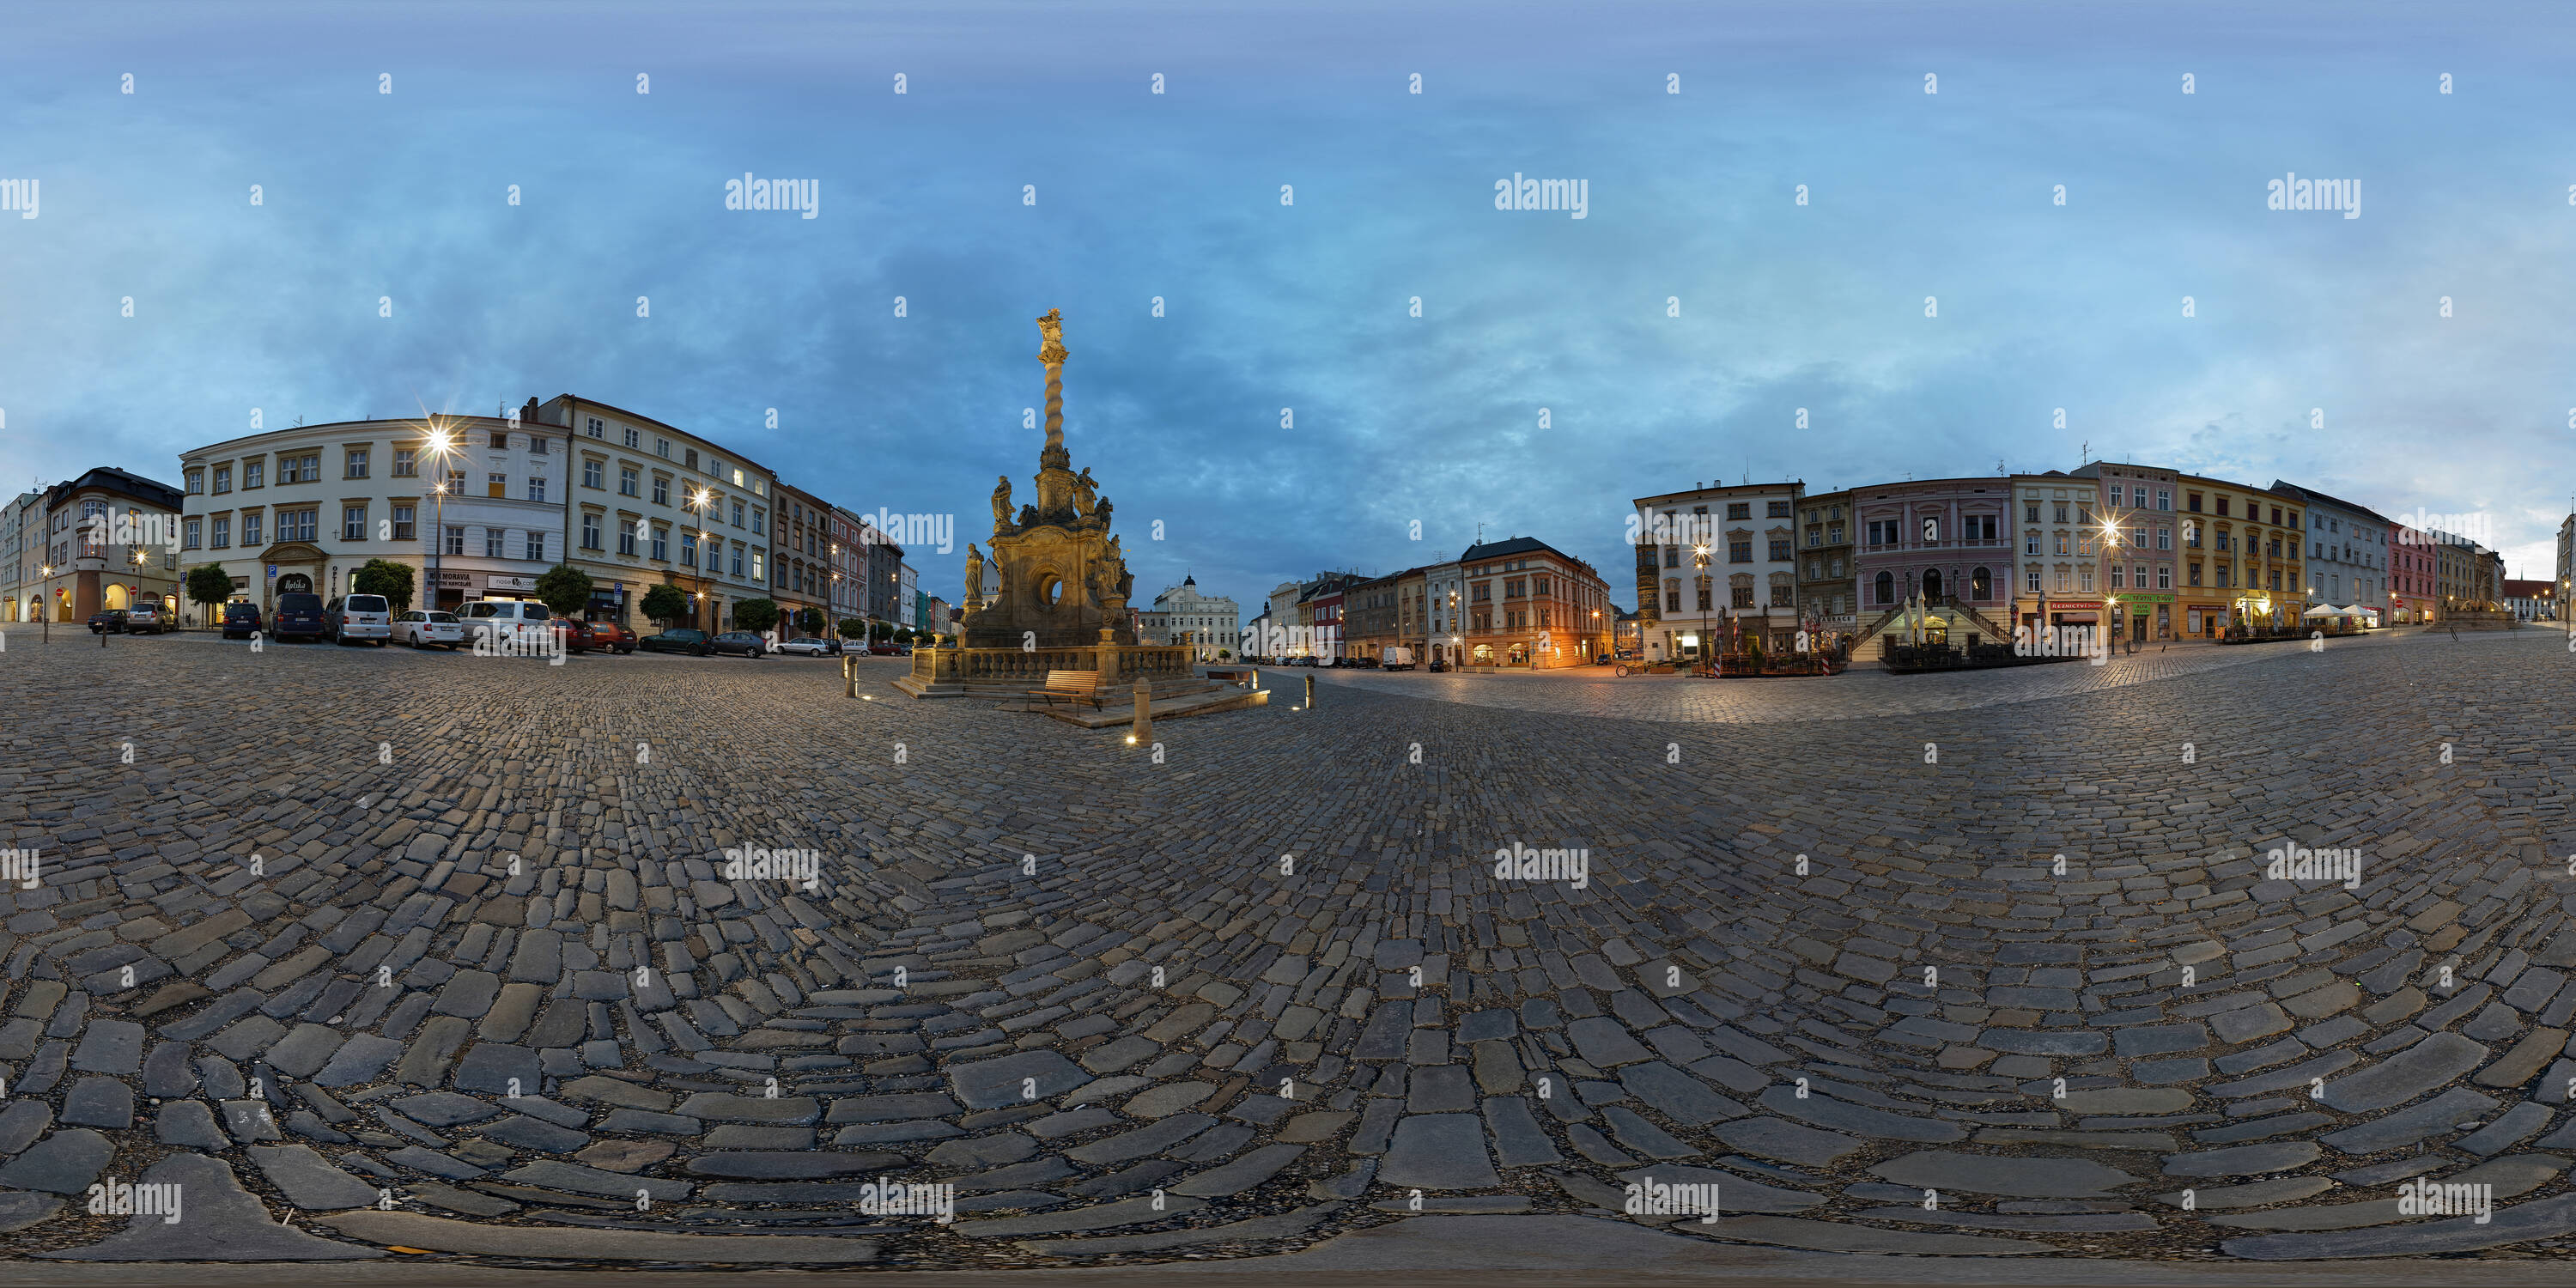 Vue panoramique à 360° de Soirée dans la colonne mariale, Olomouc